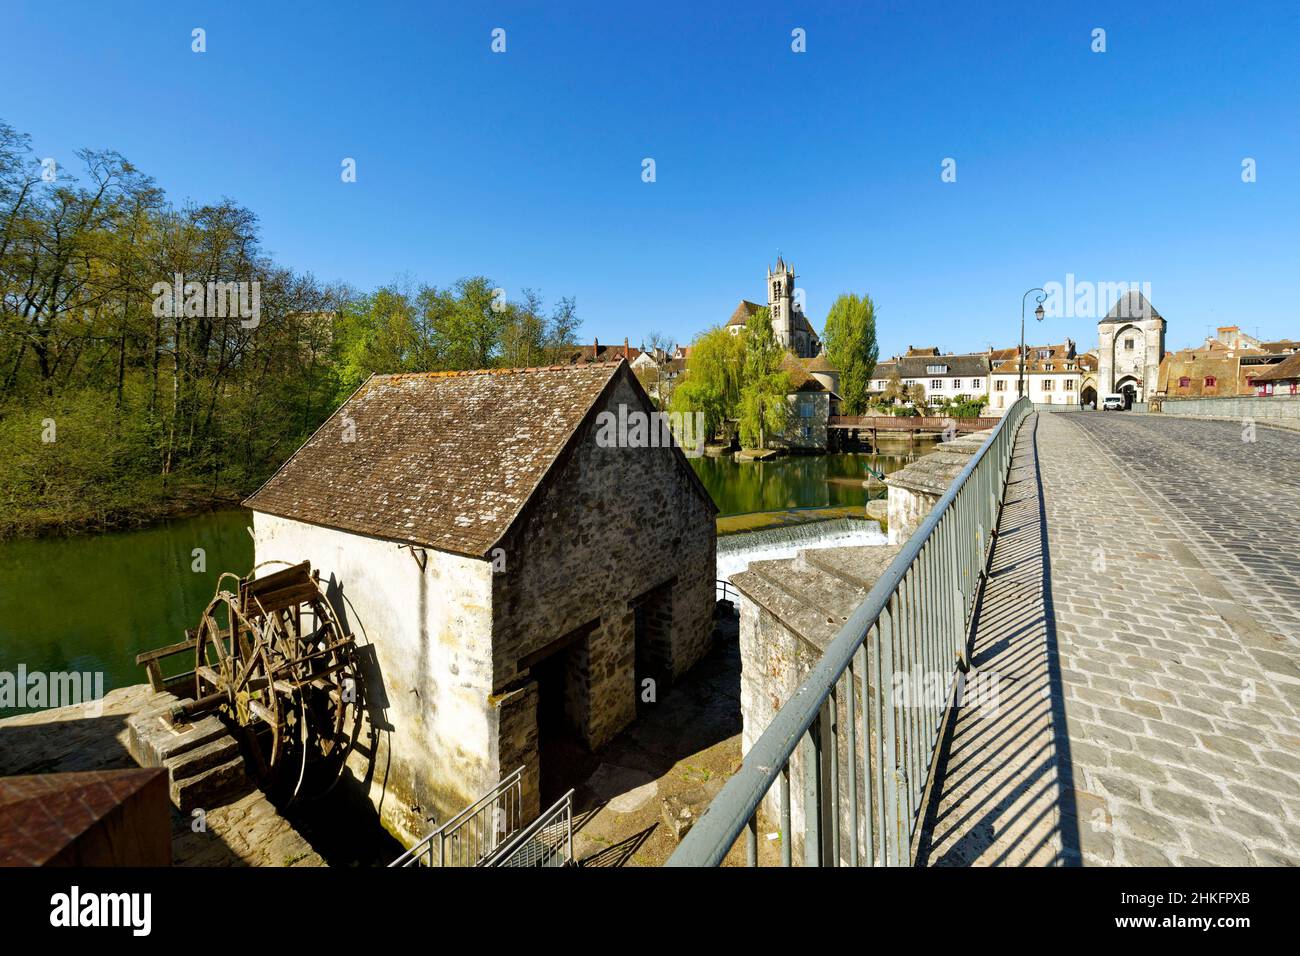 Francia, Sena y Marne, Moret sur Loing, antiguo puente de piedra sobre el río Loing, la puerta de Borgoña, antiguo molino y la Iglesia de la Natividad Foto de stock